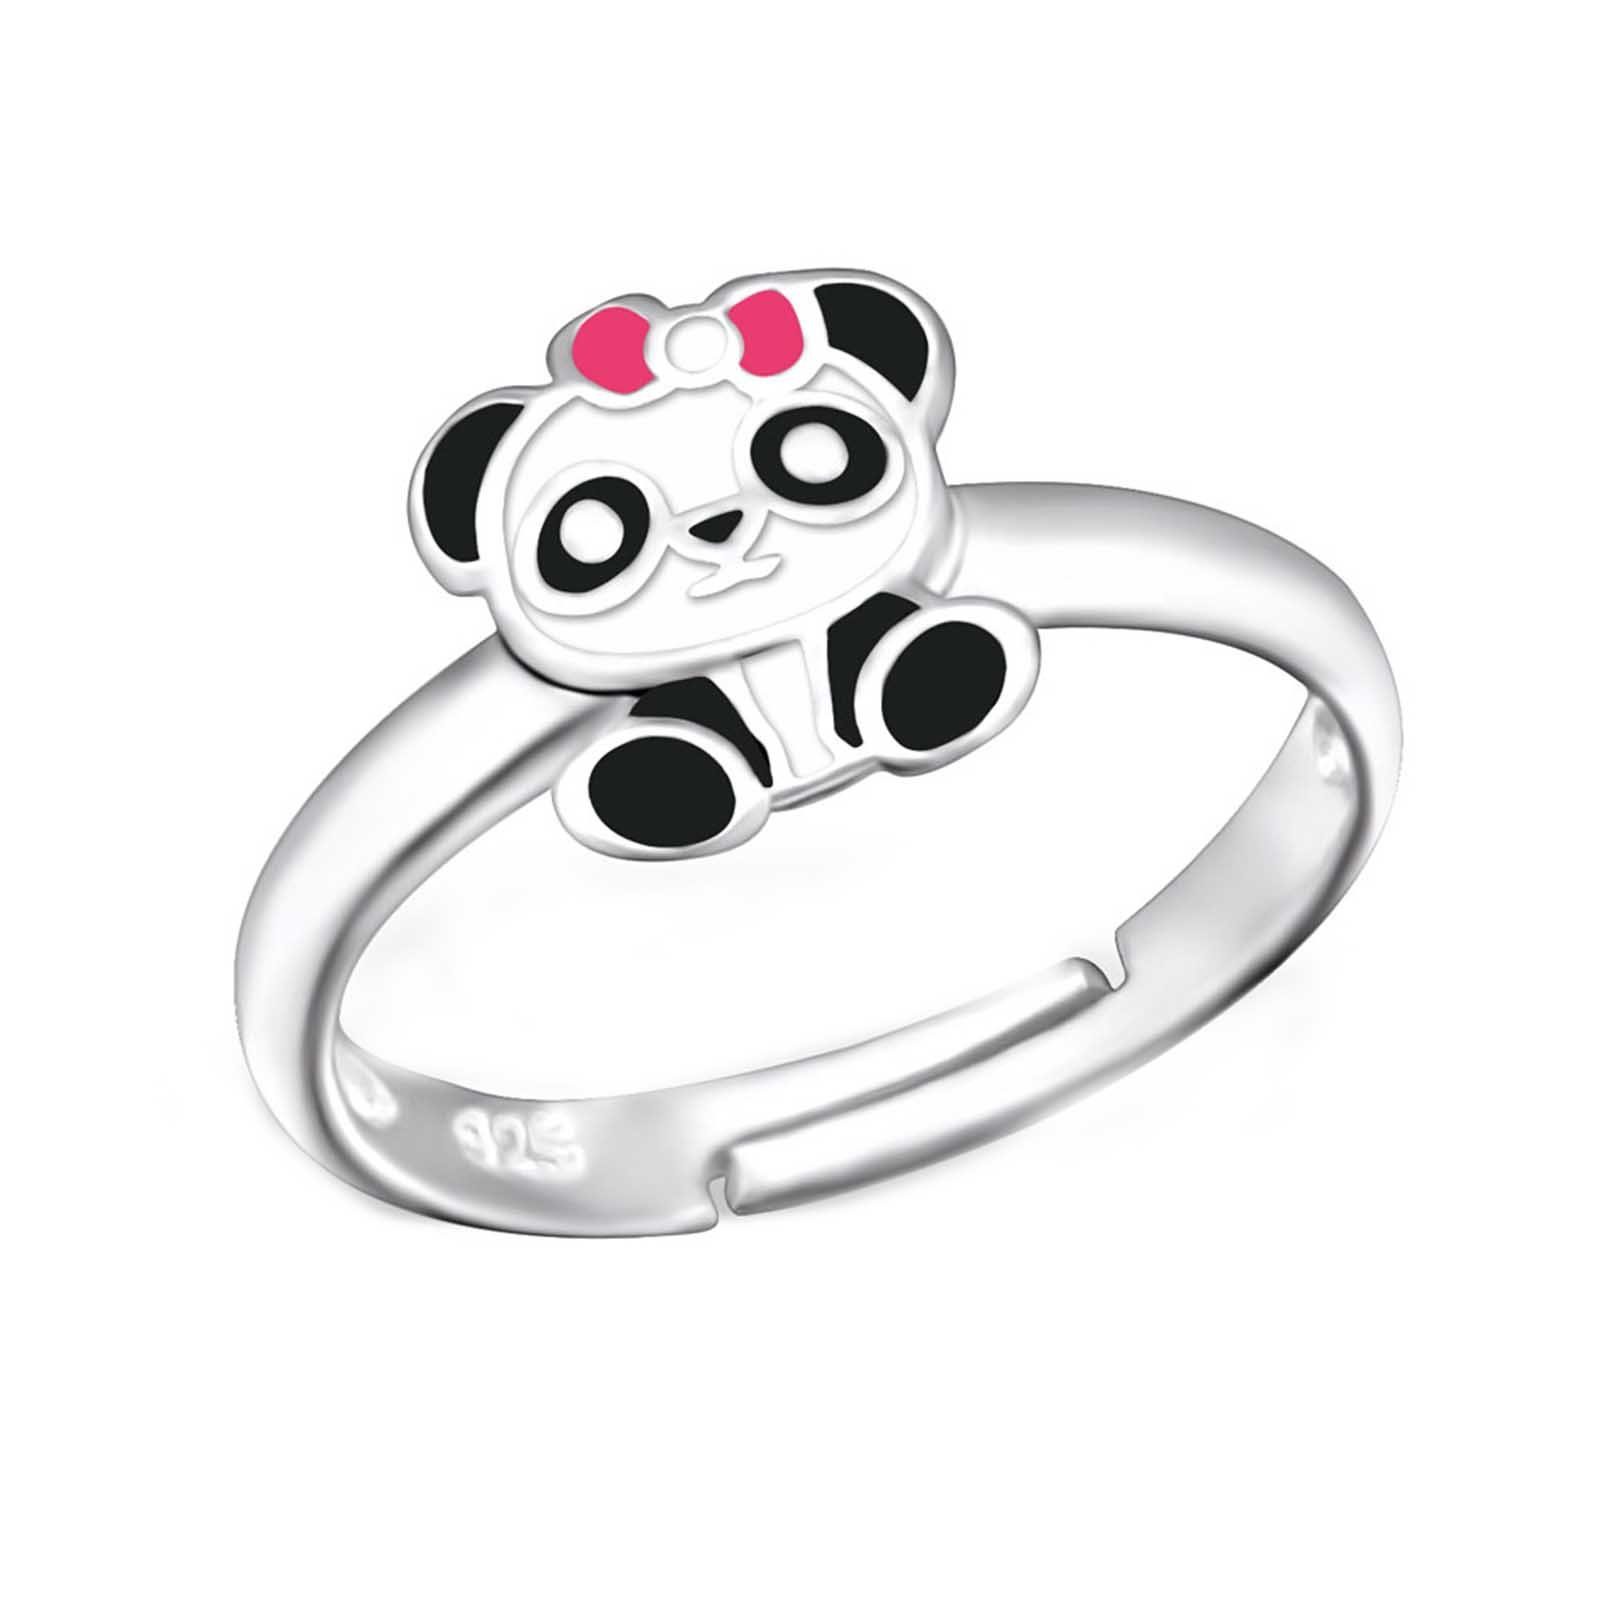 Kinder Accessoires schmuck23 Fingerring Kinder Ring Panda Bär 925 Silber, Kinderschmuck Silberring Mädchen Geschenk